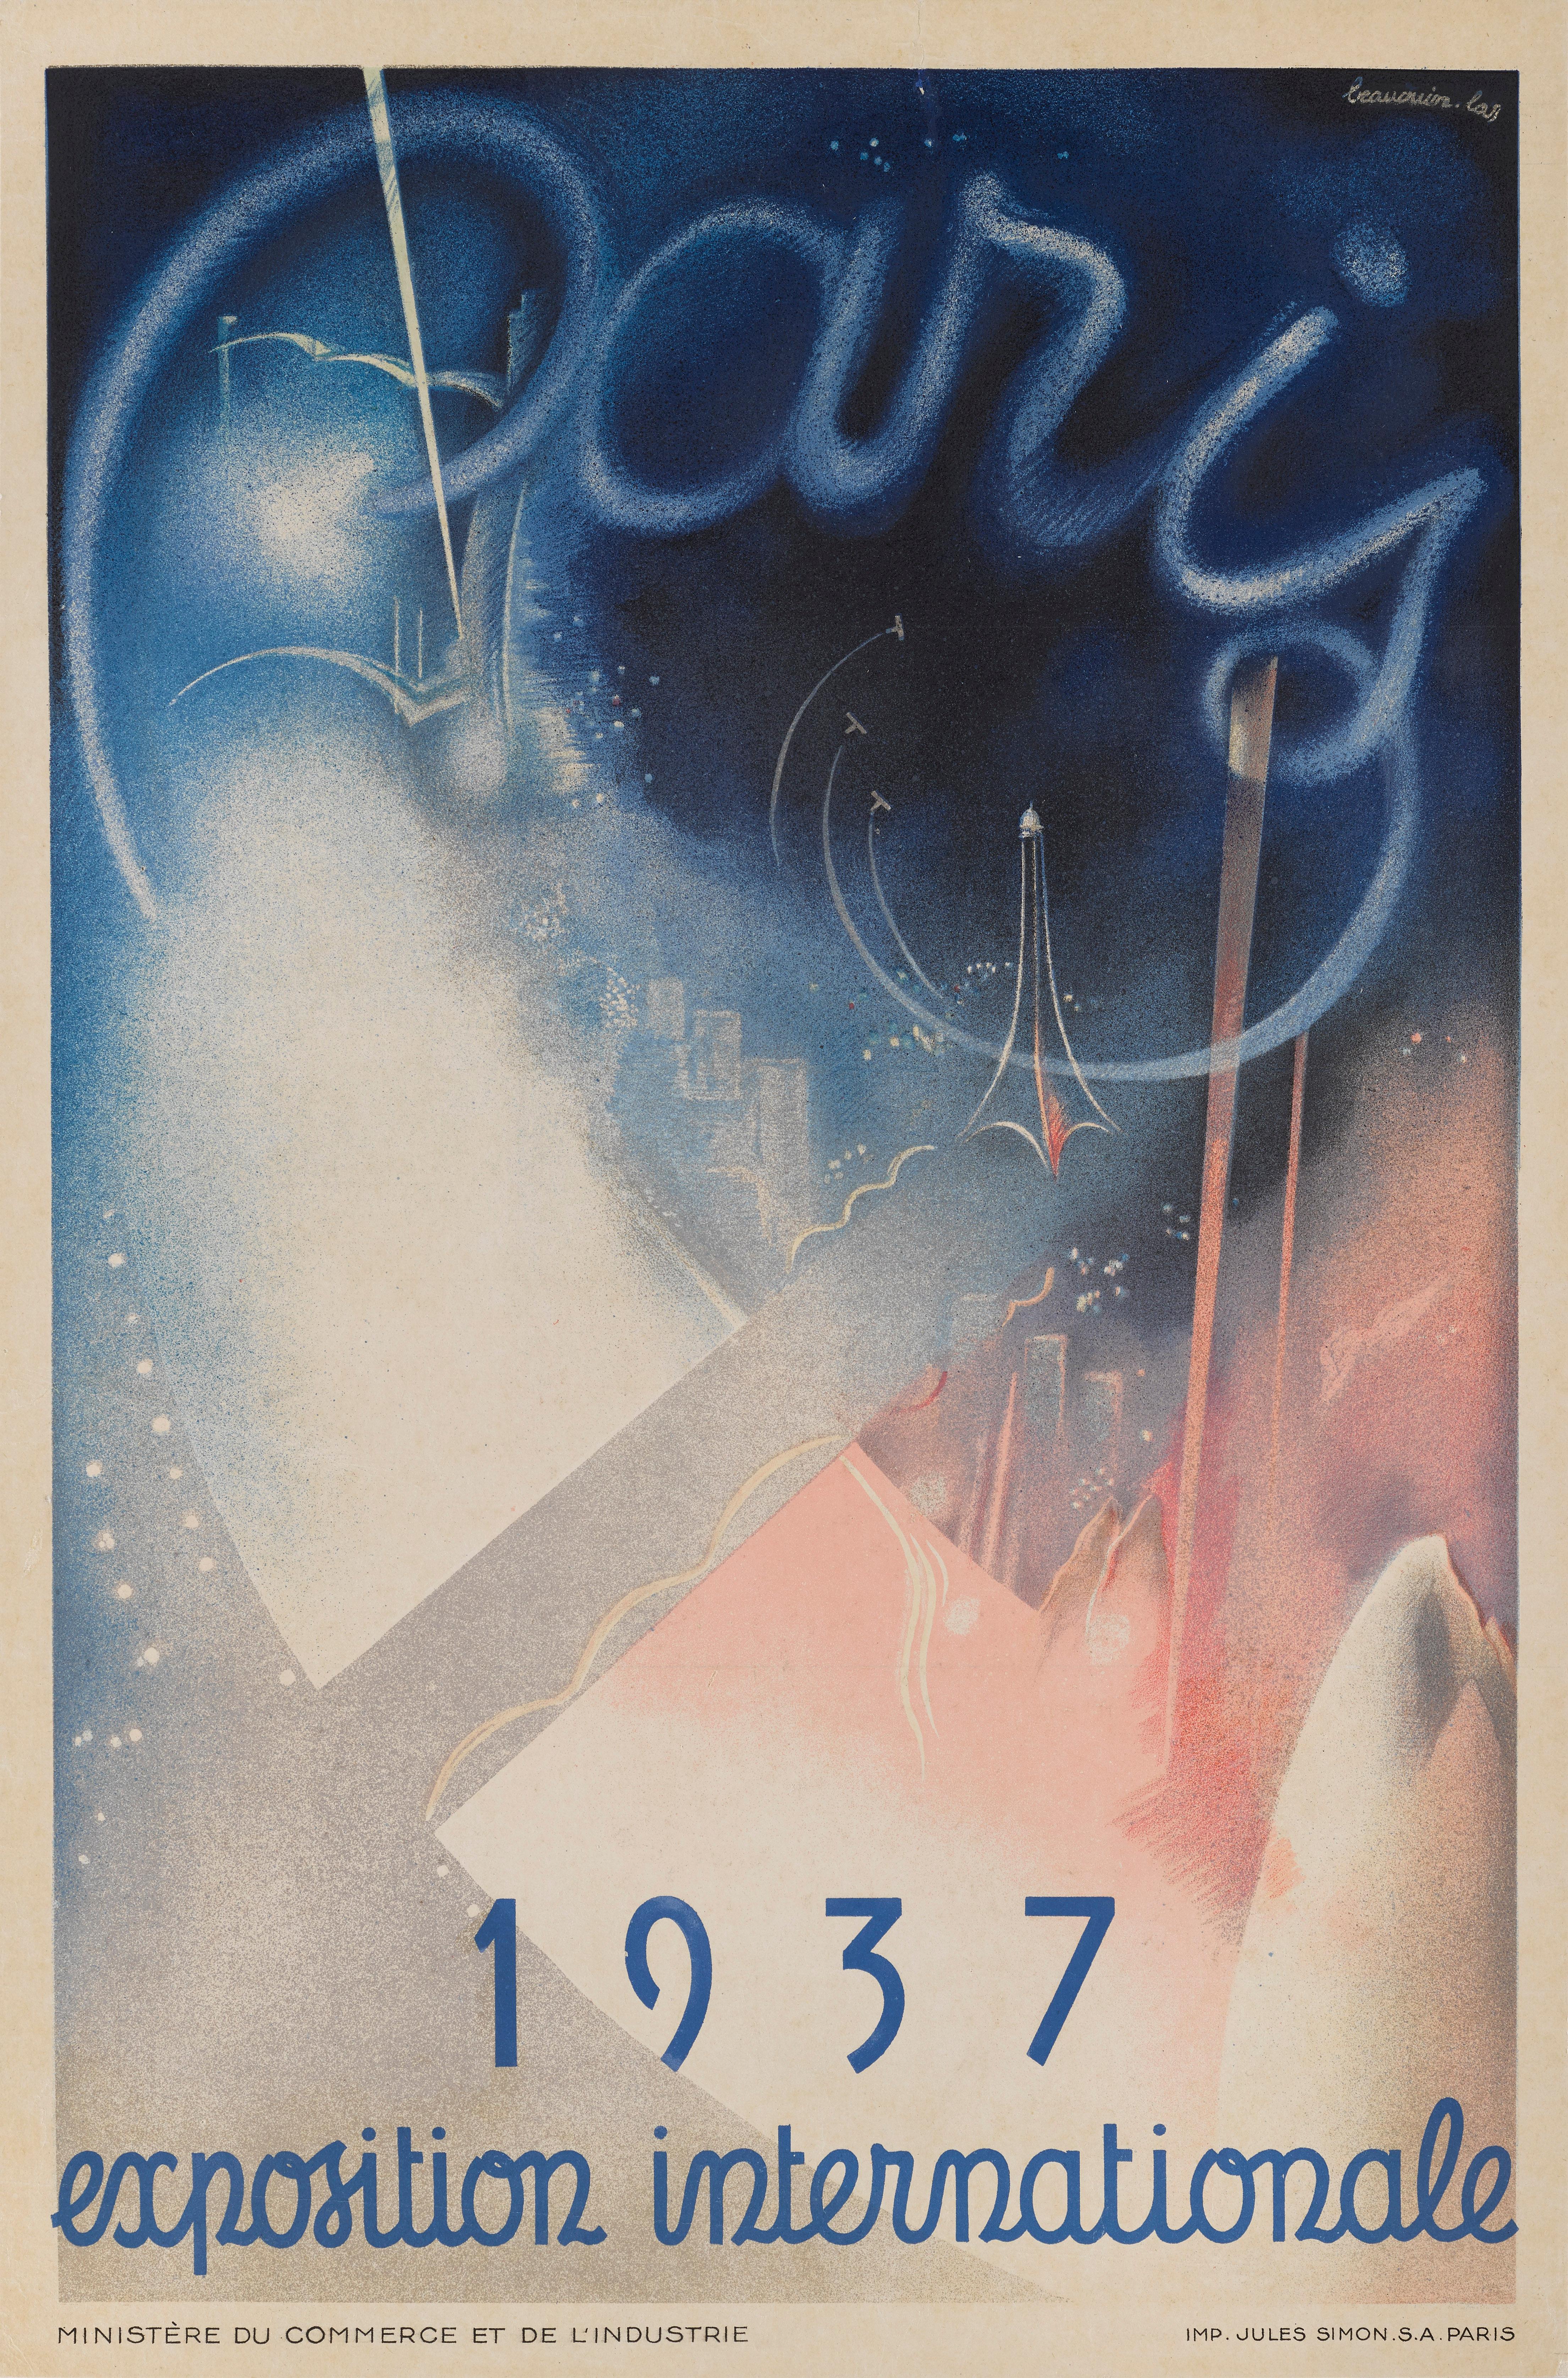 Originales französisches Plakat für die Exposition International in Paris, 1937.
Dieses preisgekrönte Art-déco-Design wurde von Eugene Beaudoin (1898-1983) und Marcel Lods (1891-1978) entworfen.  Dies ist das kleinste von ursprünglich 3 gedruckten